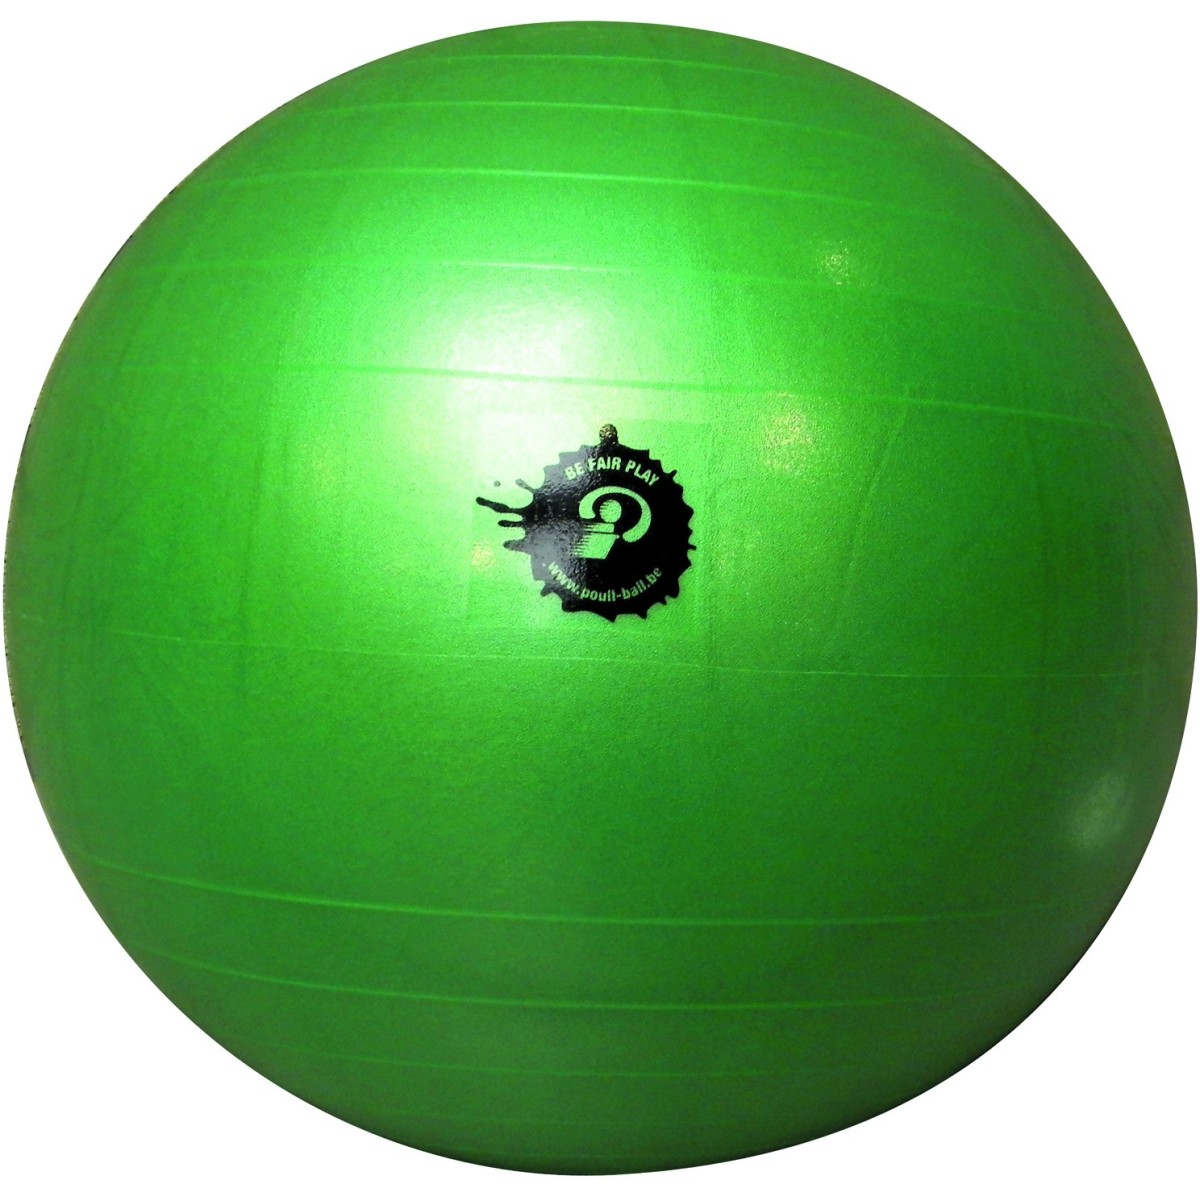 Ballon de Poul-ball - 1